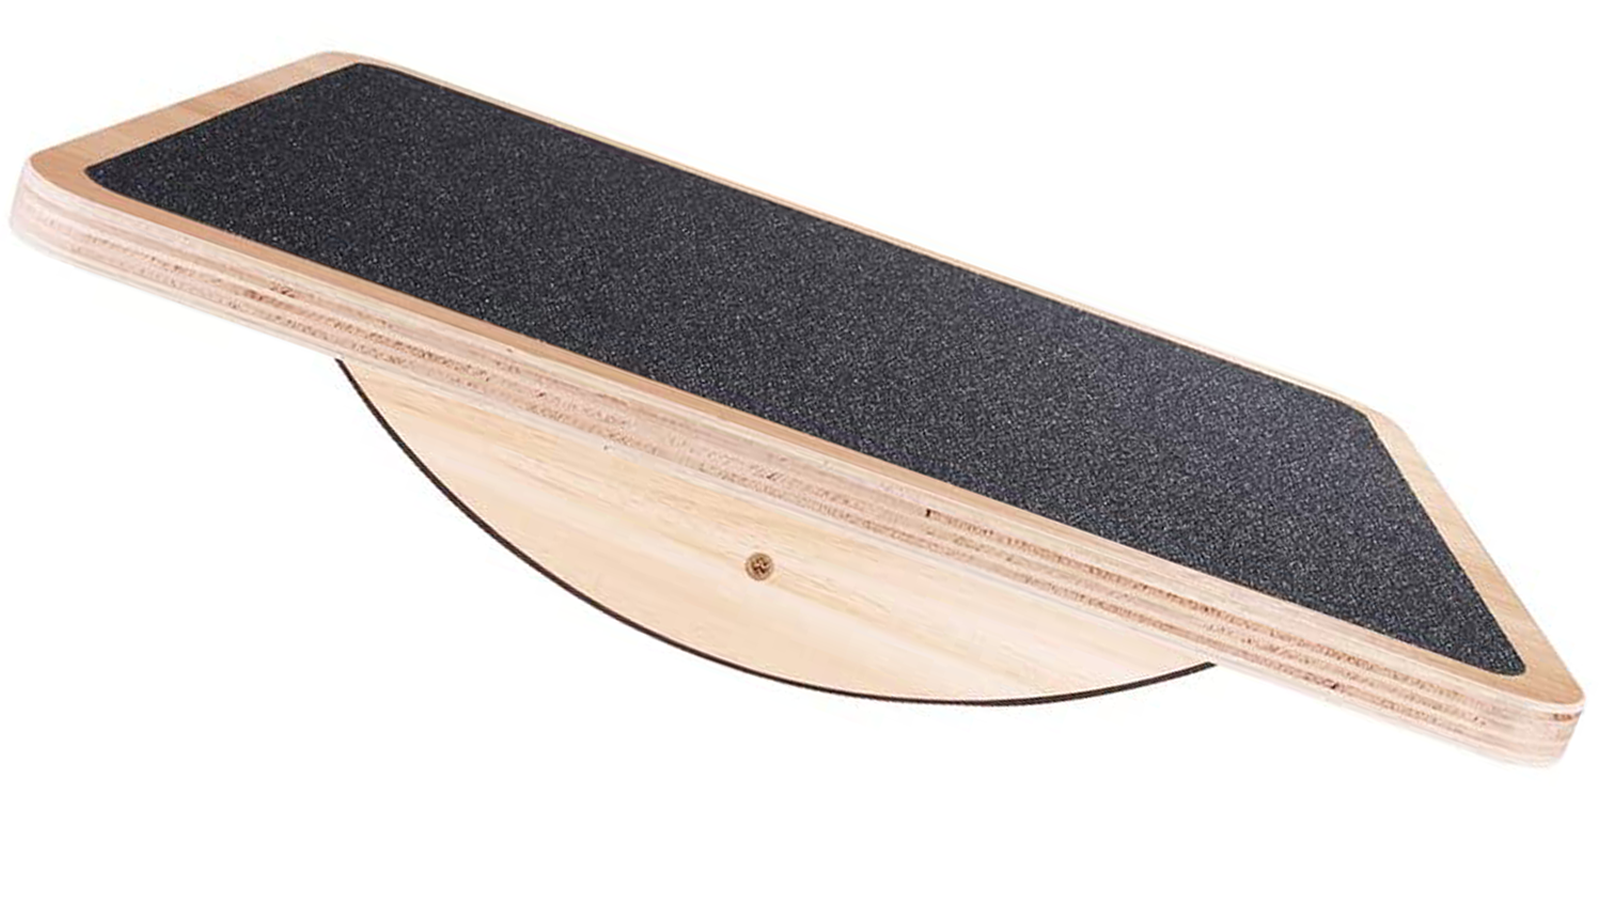 Bảng thăng bằng chuyên nghiệp bằng gỗ rocker với sàn hấp dẫn